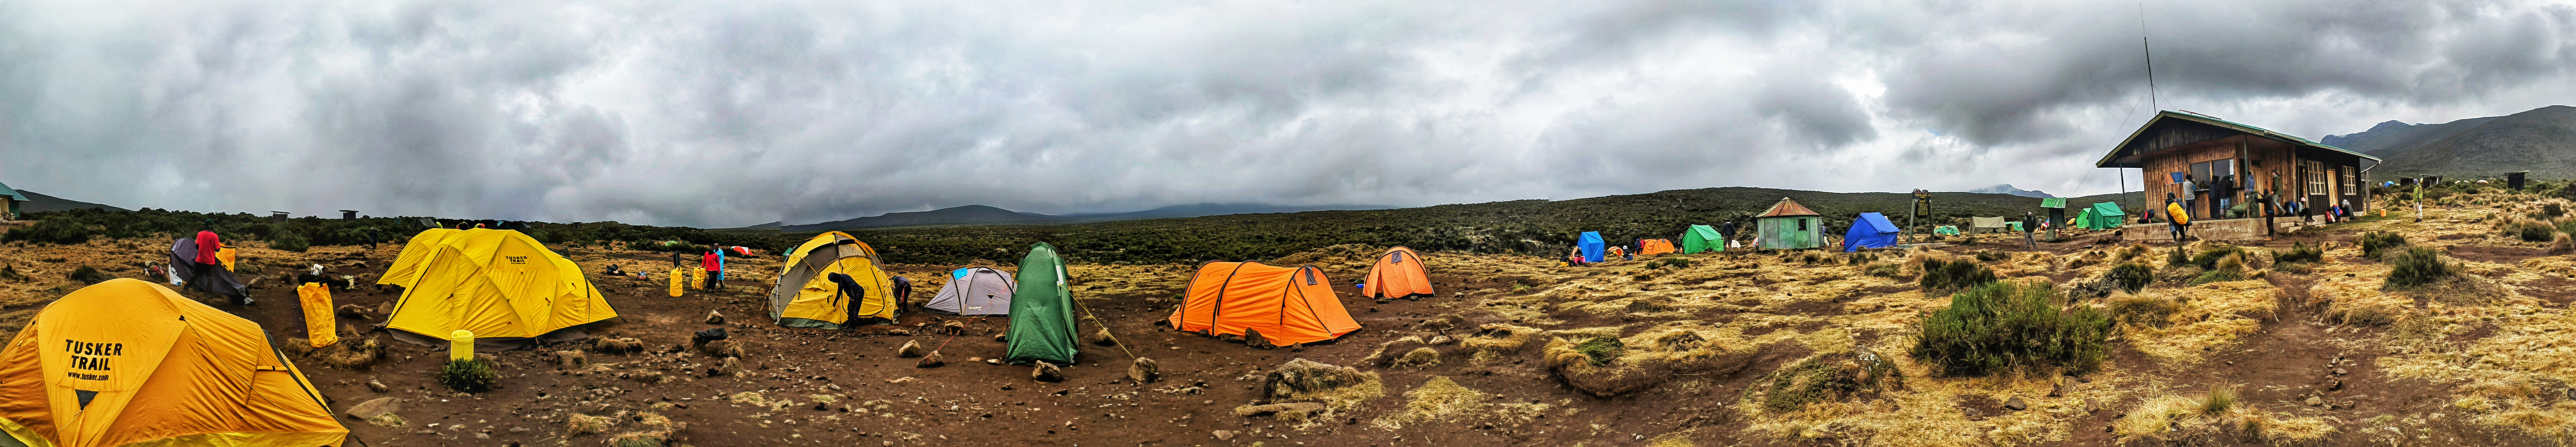 Kilimanjaro camping